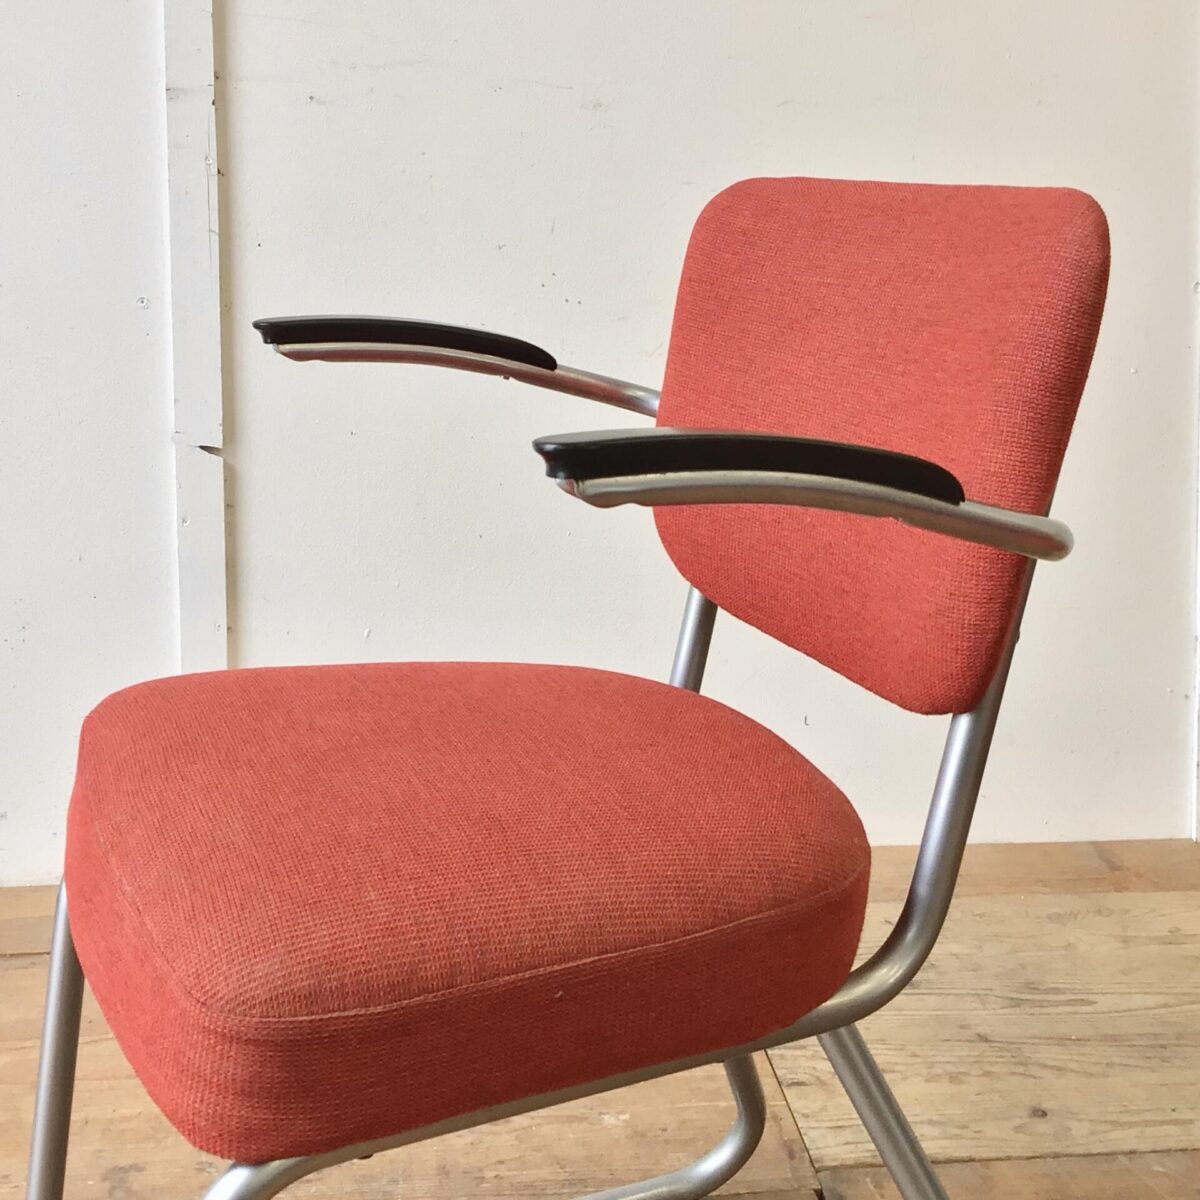 Zwei schöne Stühle von Jan Schröfer für Ahrend de Cirkel. Sitzhöhe ca. 47cm. Bequeme Armlehnstühle im Stile der Bauhaus Stahlrohrmöbel. Passend im Wohnzimmer, als Bürostuhl oder auch am Esstisch. In Gepflegtem gebrauchtem Vintage Zustand. 